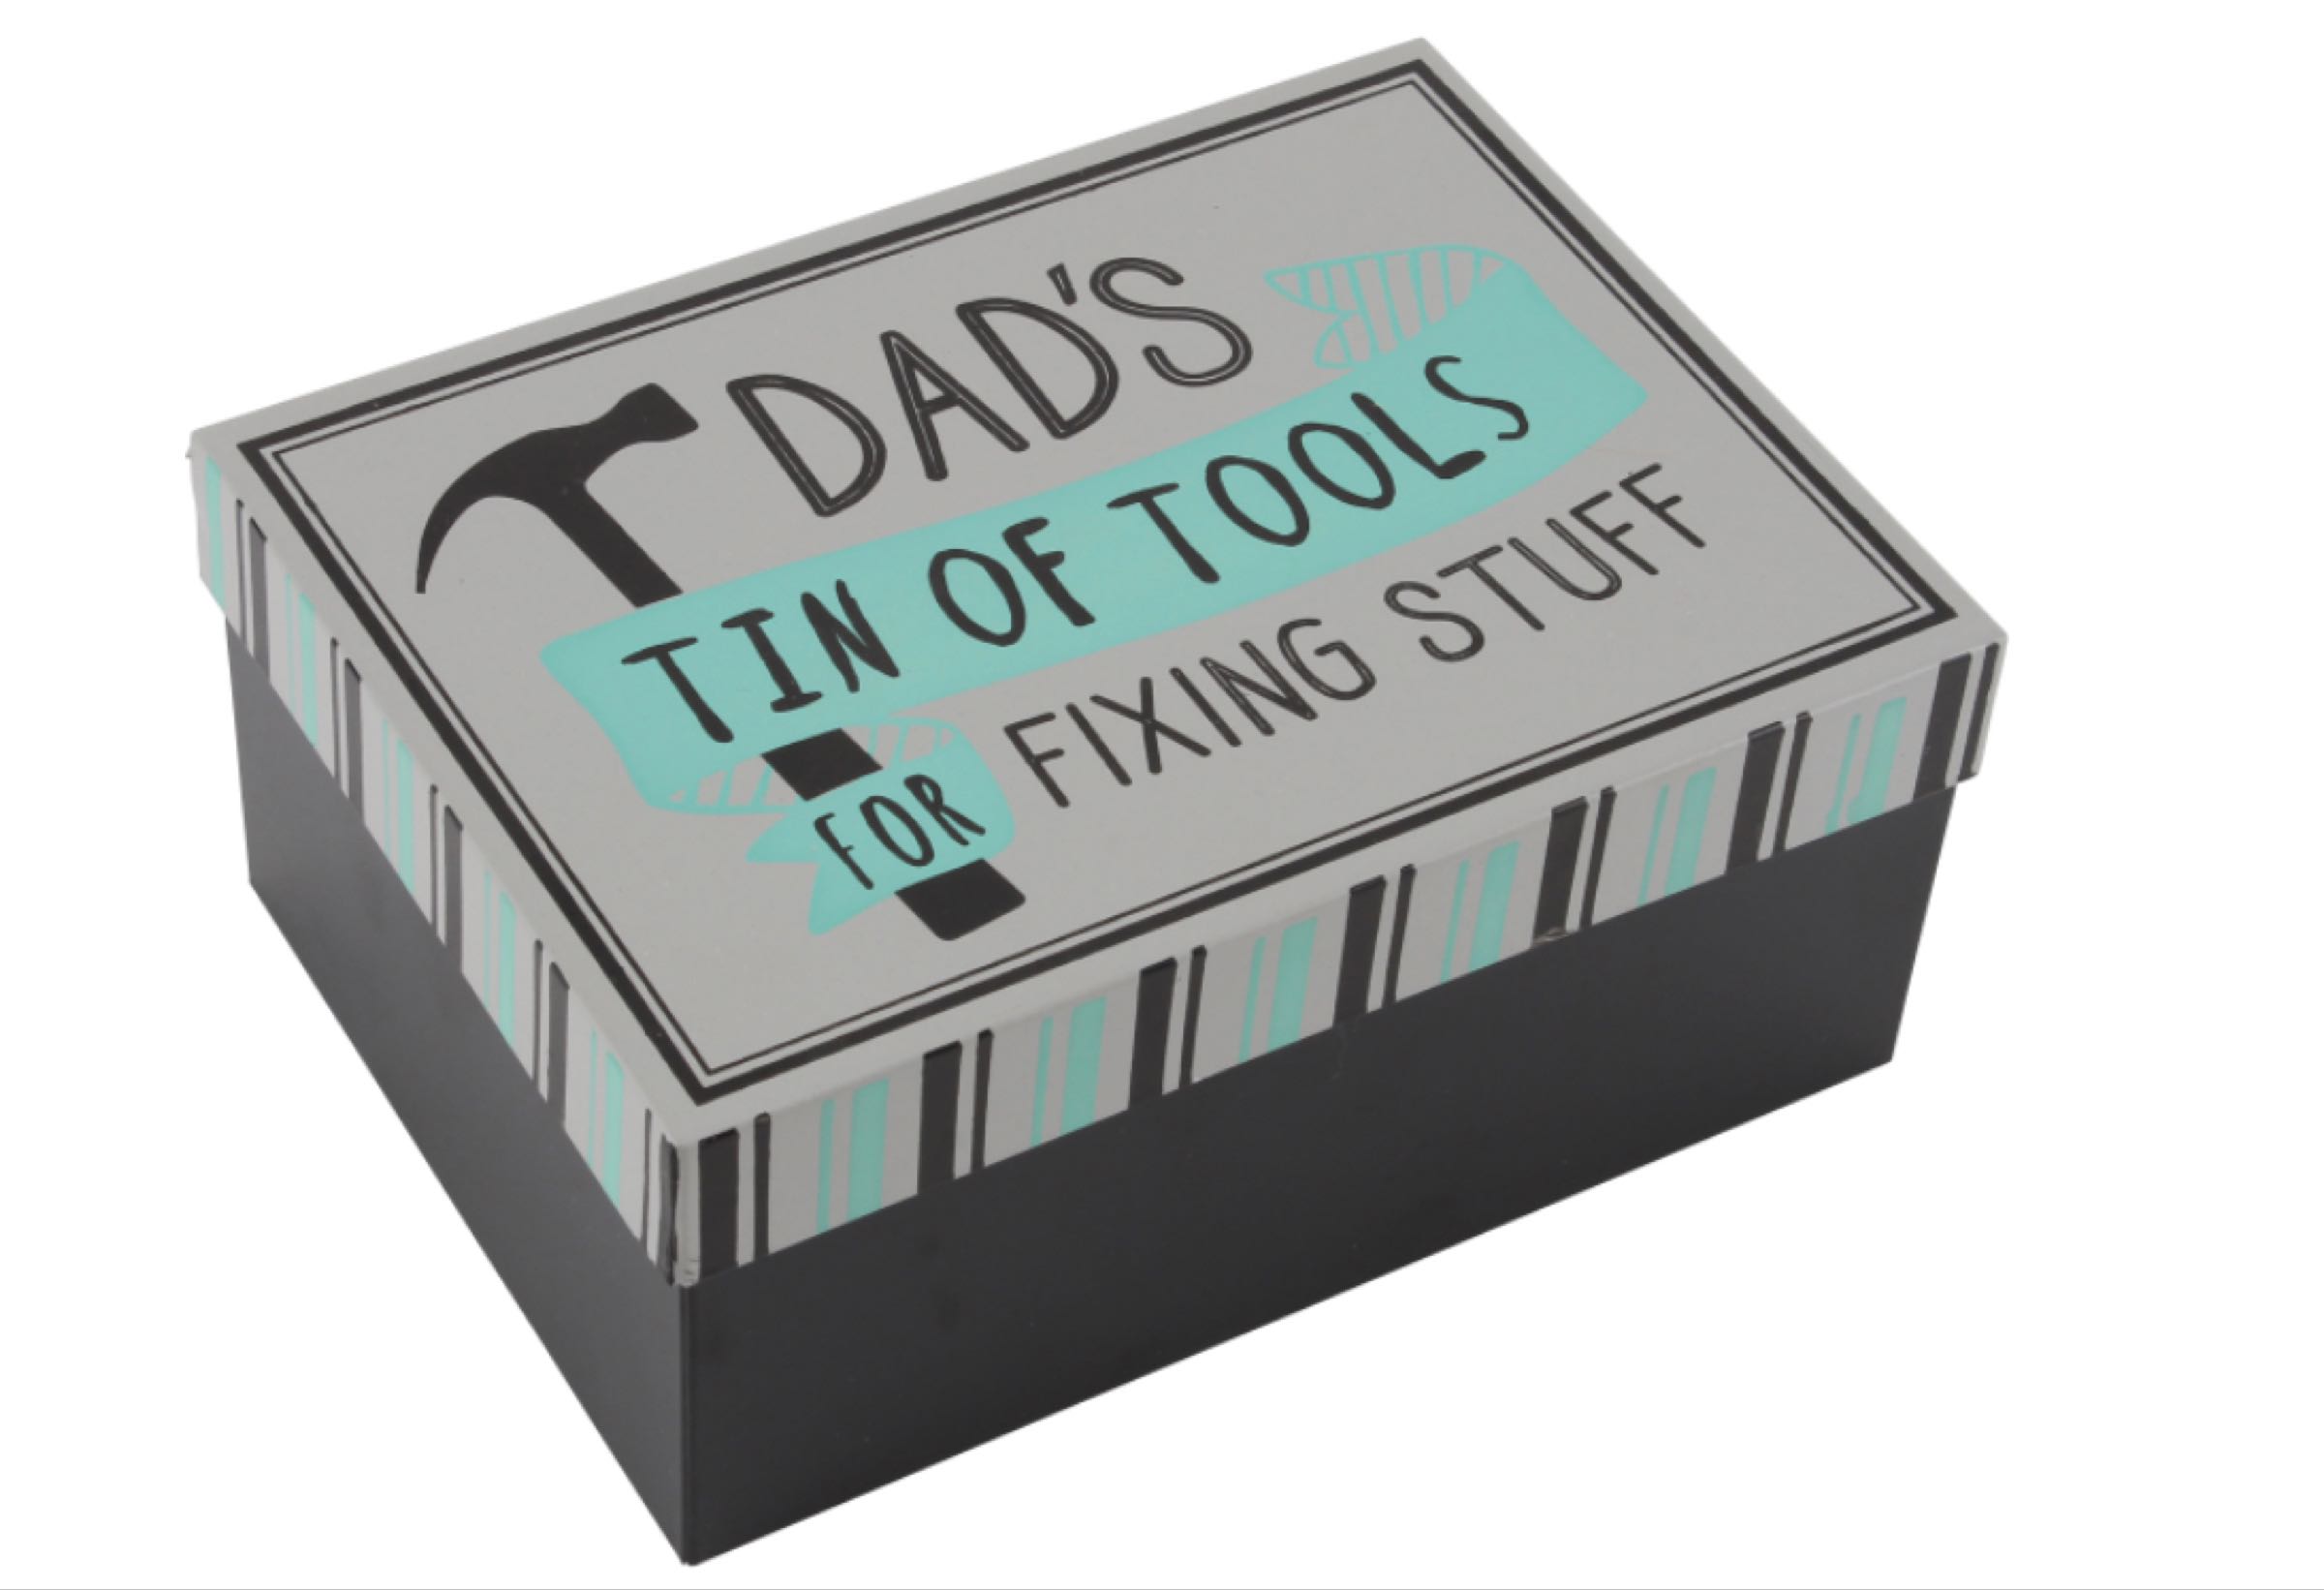 Dad’s Tin of Tools for Fixing Stuff   18cmx13.5cmx8cm